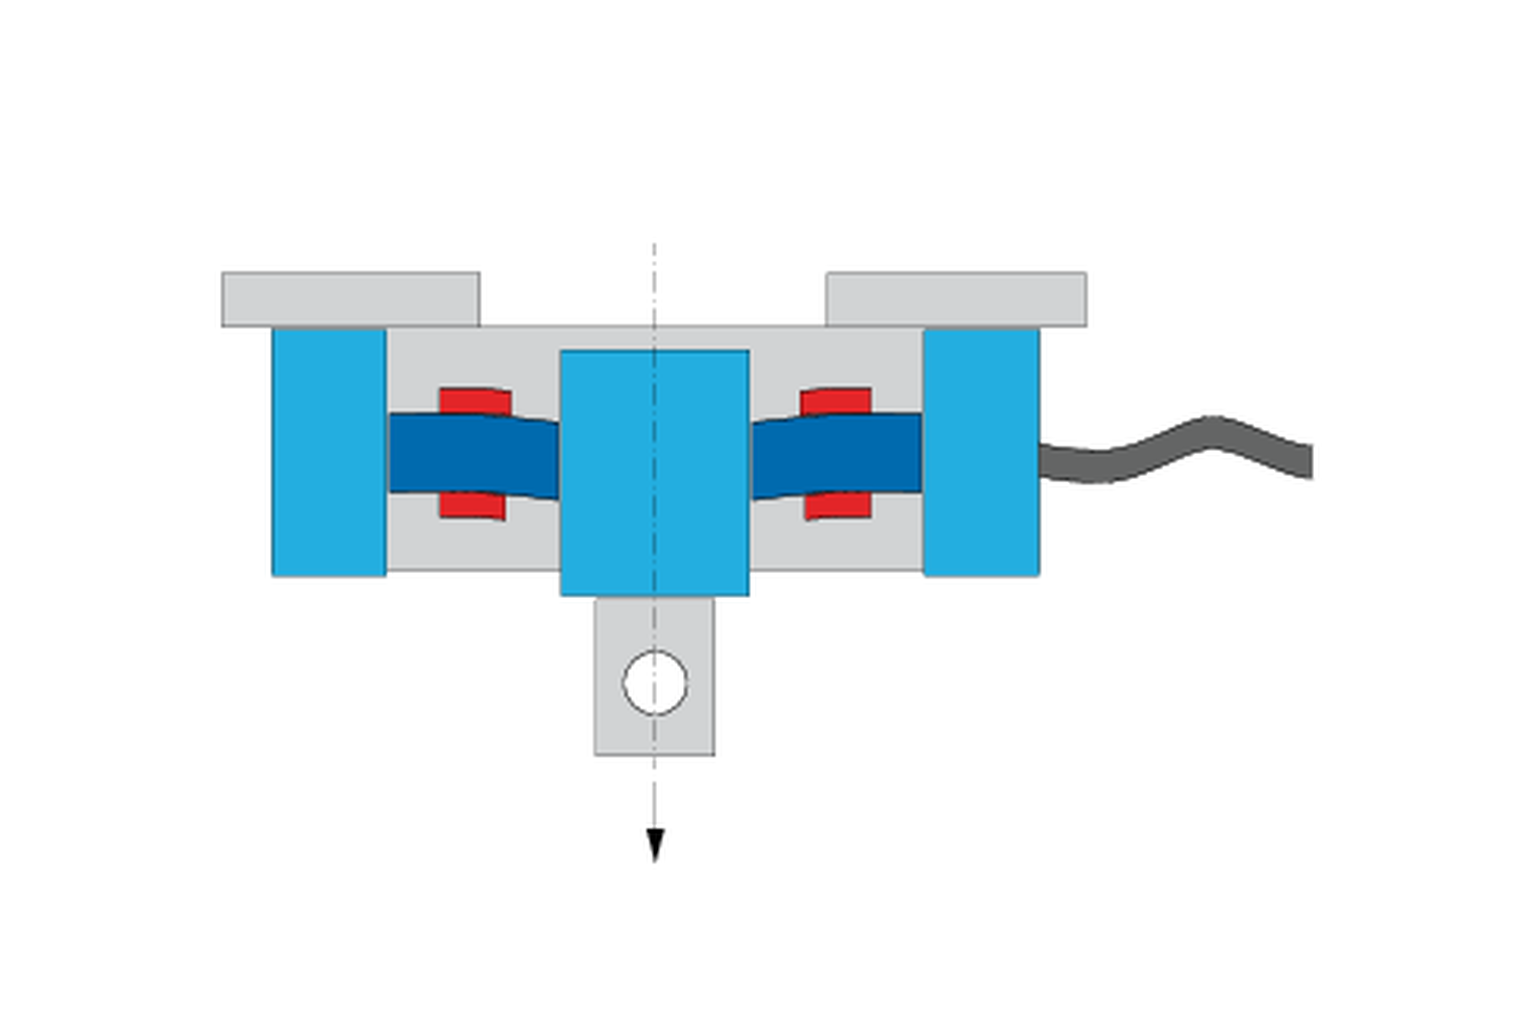 Bagaimana cara kerja load cell? Ilustrasi load cell dengan pengukur regangan dalam keadaan memanjang dan terkompresi